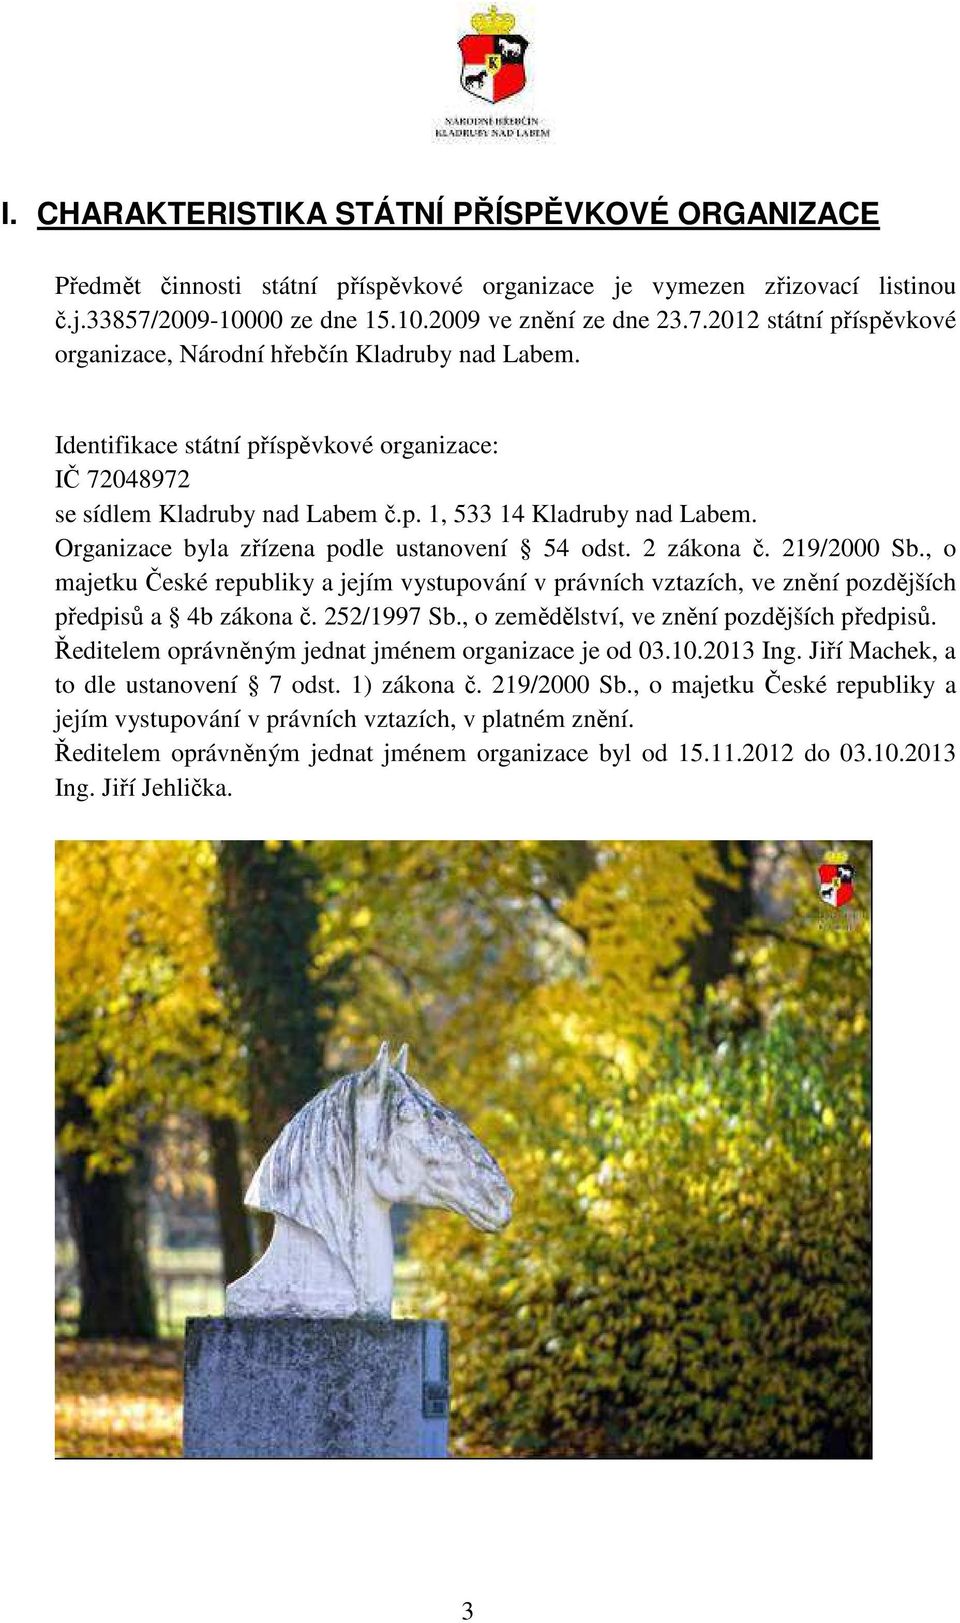 Identifikace státní příspěvkové organizace: IČ 72048972 se sídlem Kladruby nad Labem č.p. 1, 533 14 Kladruby nad Labem. Organizace byla zřízena podle ustanovení 54 odst. 2 zákona č. 219/2000 Sb.